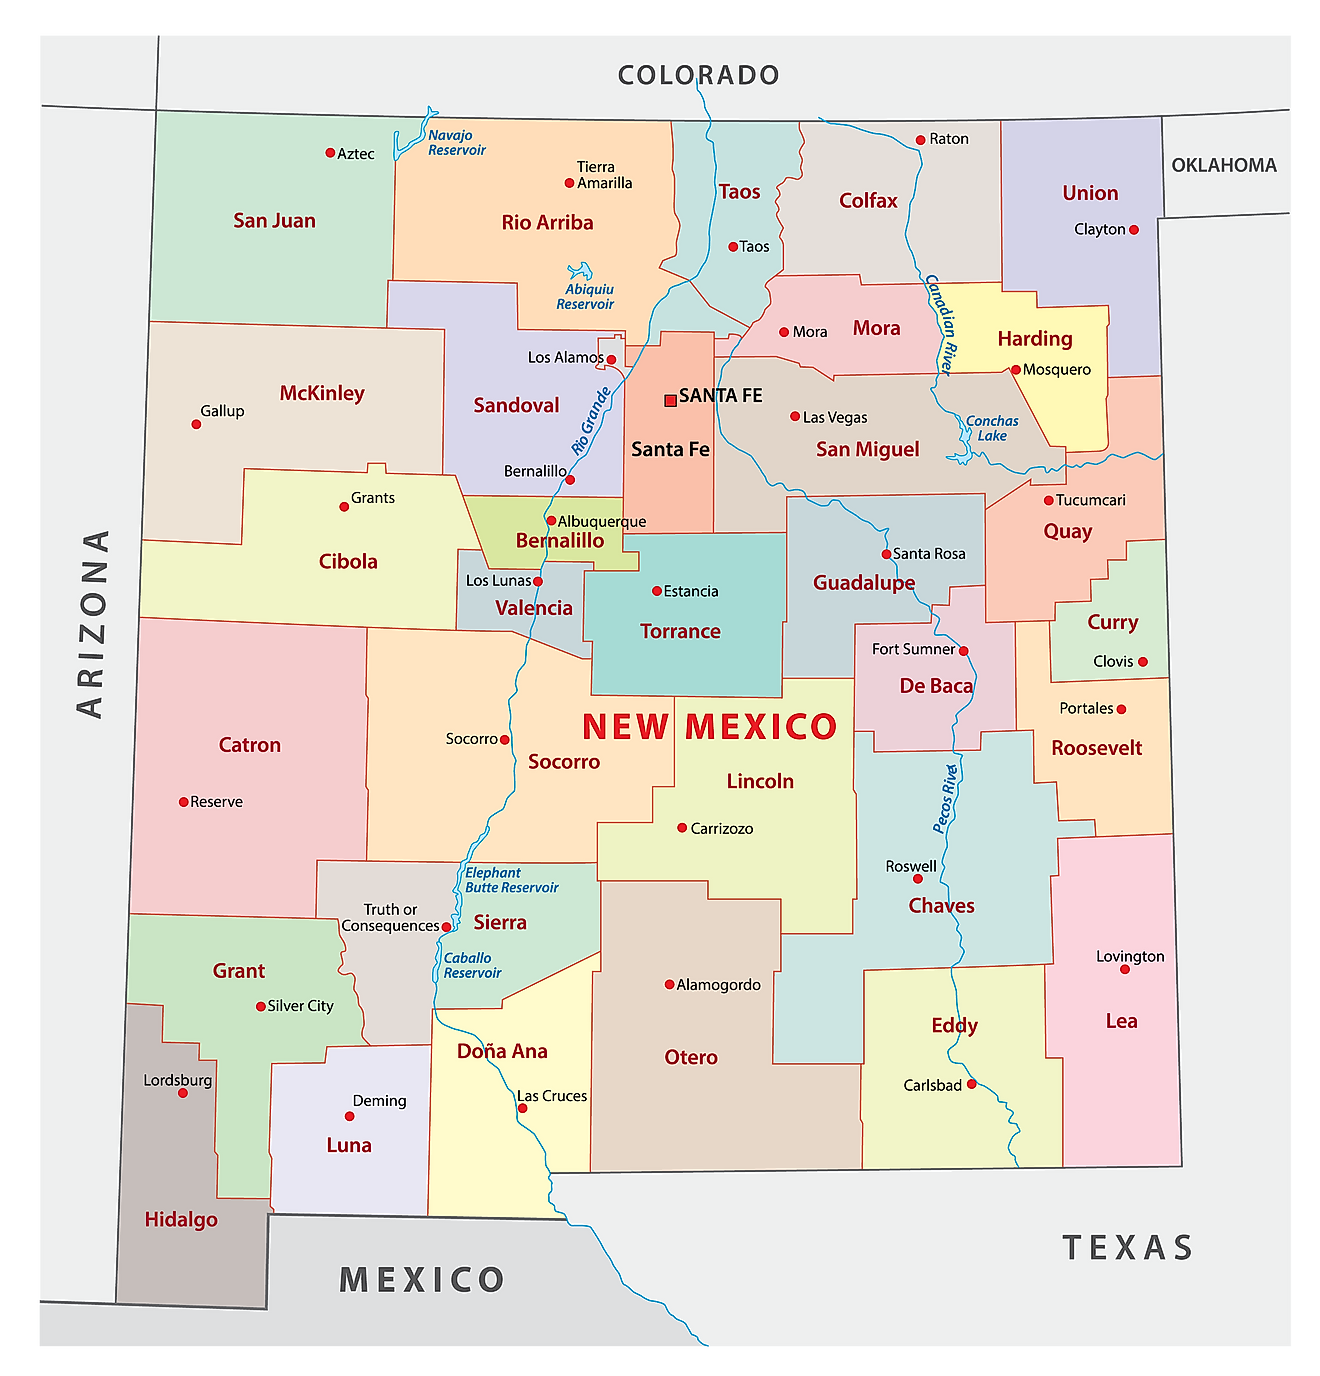 Mapa Administrativo de Nuevo México mostrando sus 33 condados y la ciudad capital - Santa Fe